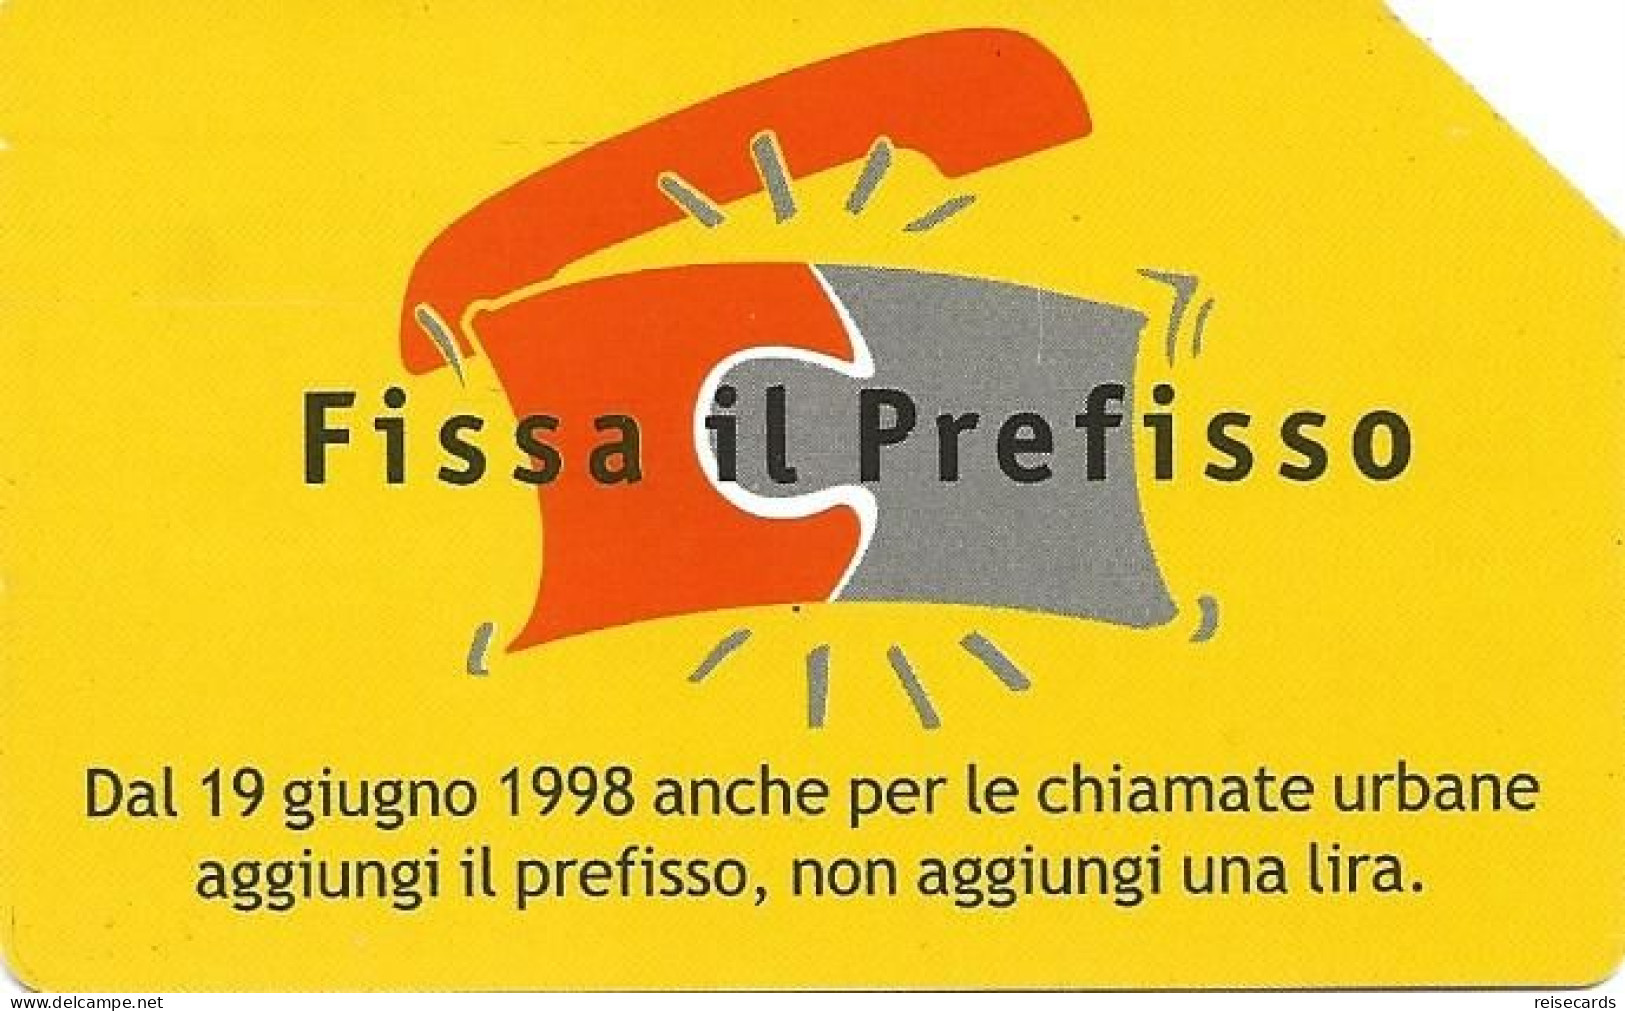 Italy: Telecom Italia - Fissa Il Prefisso - Publiques Publicitaires